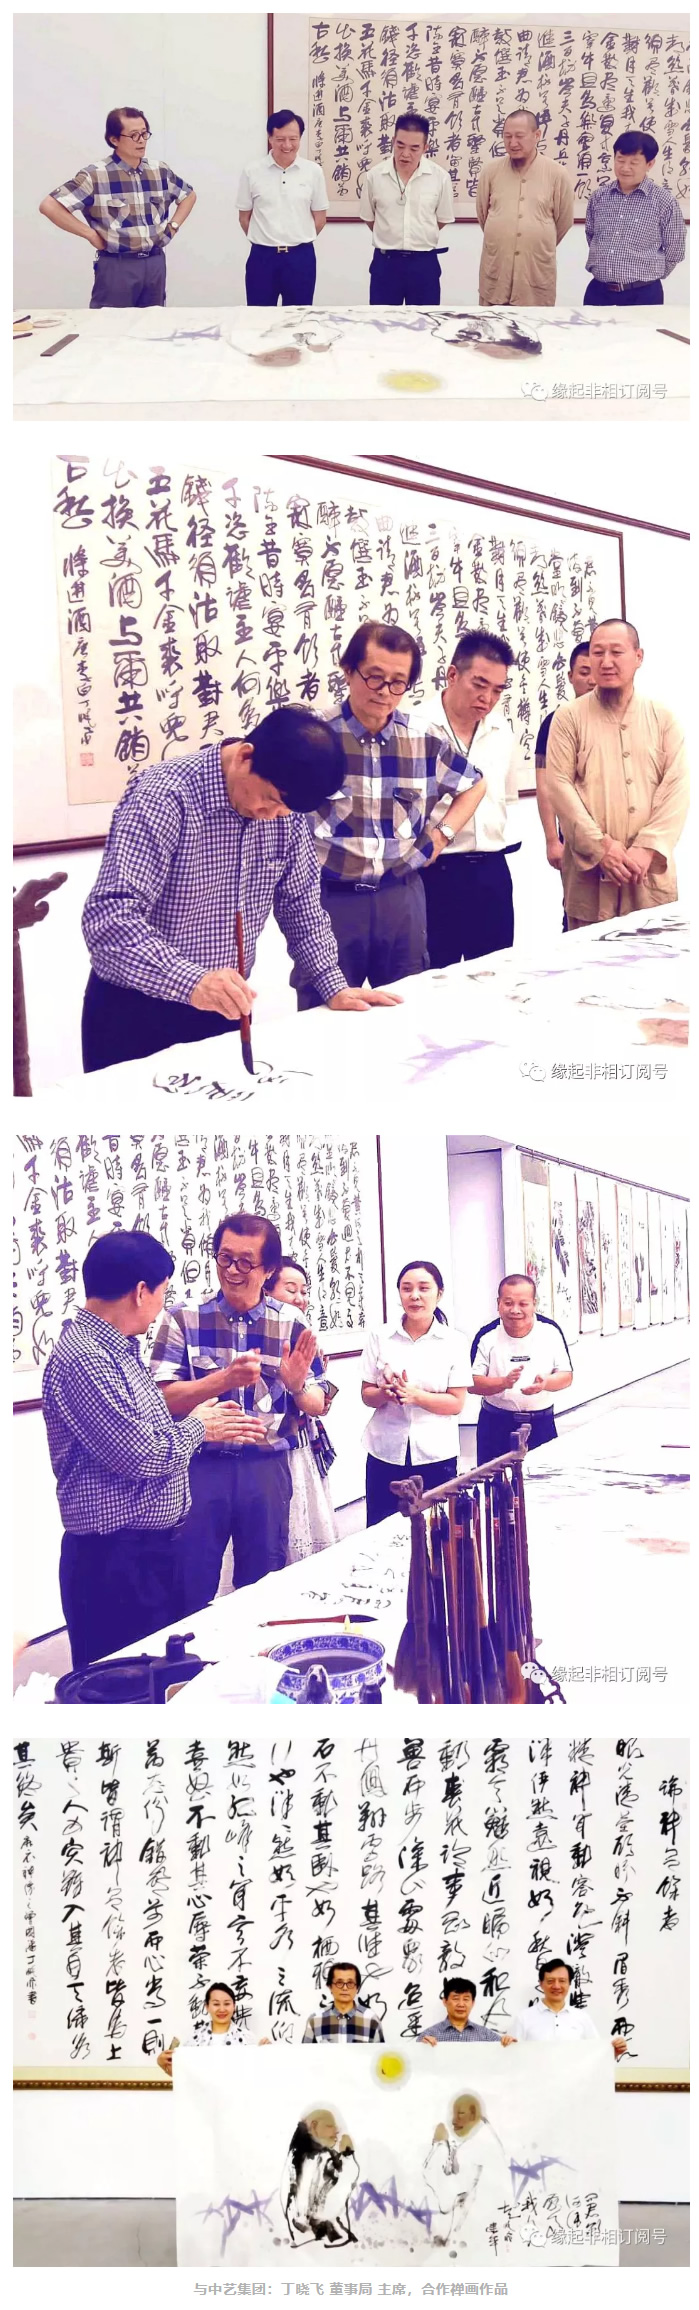 2018年画家王建平受邀参加中国东莞国际佛教文化艺术节